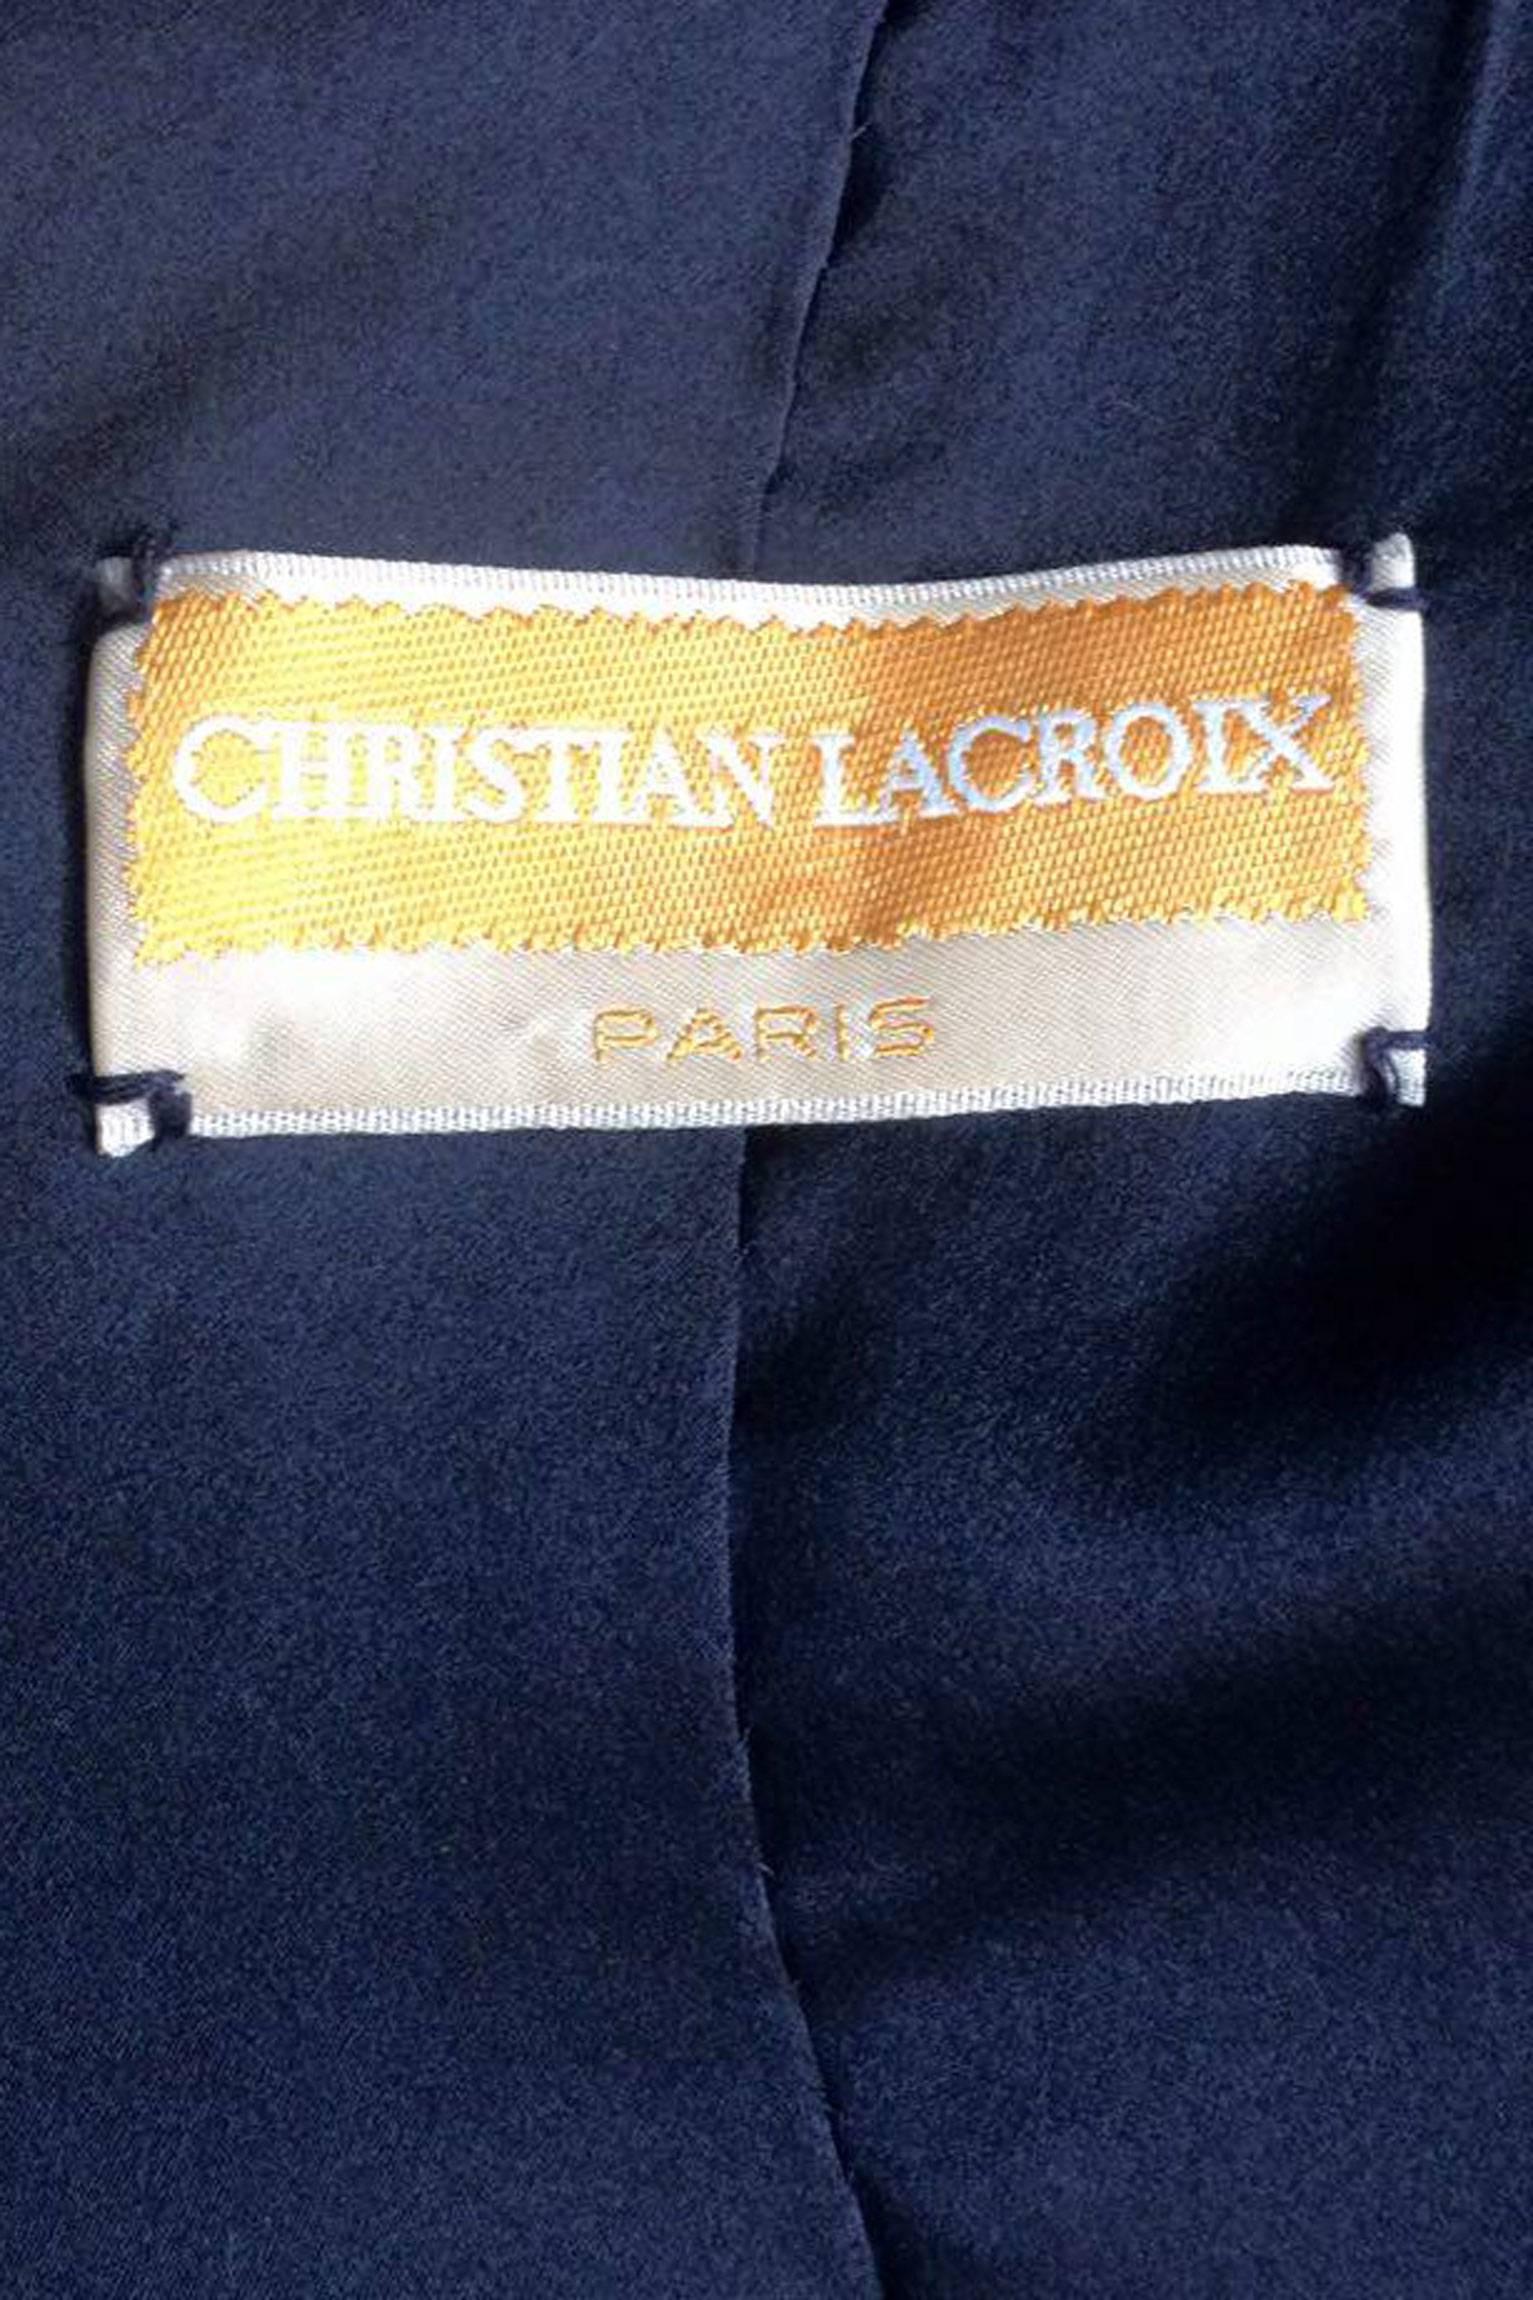 Ein lavendelfarbener Christian Lacroix Haute Couture Blazer für Frühjahr/Sommer 1993 mit einer wunderschönen, komplizierten schwarzen Soutache-Stickerei rundherum. Die Stickerei, die knapp unterhalb des abgerundeten Revers beginnt, verläuft parallel